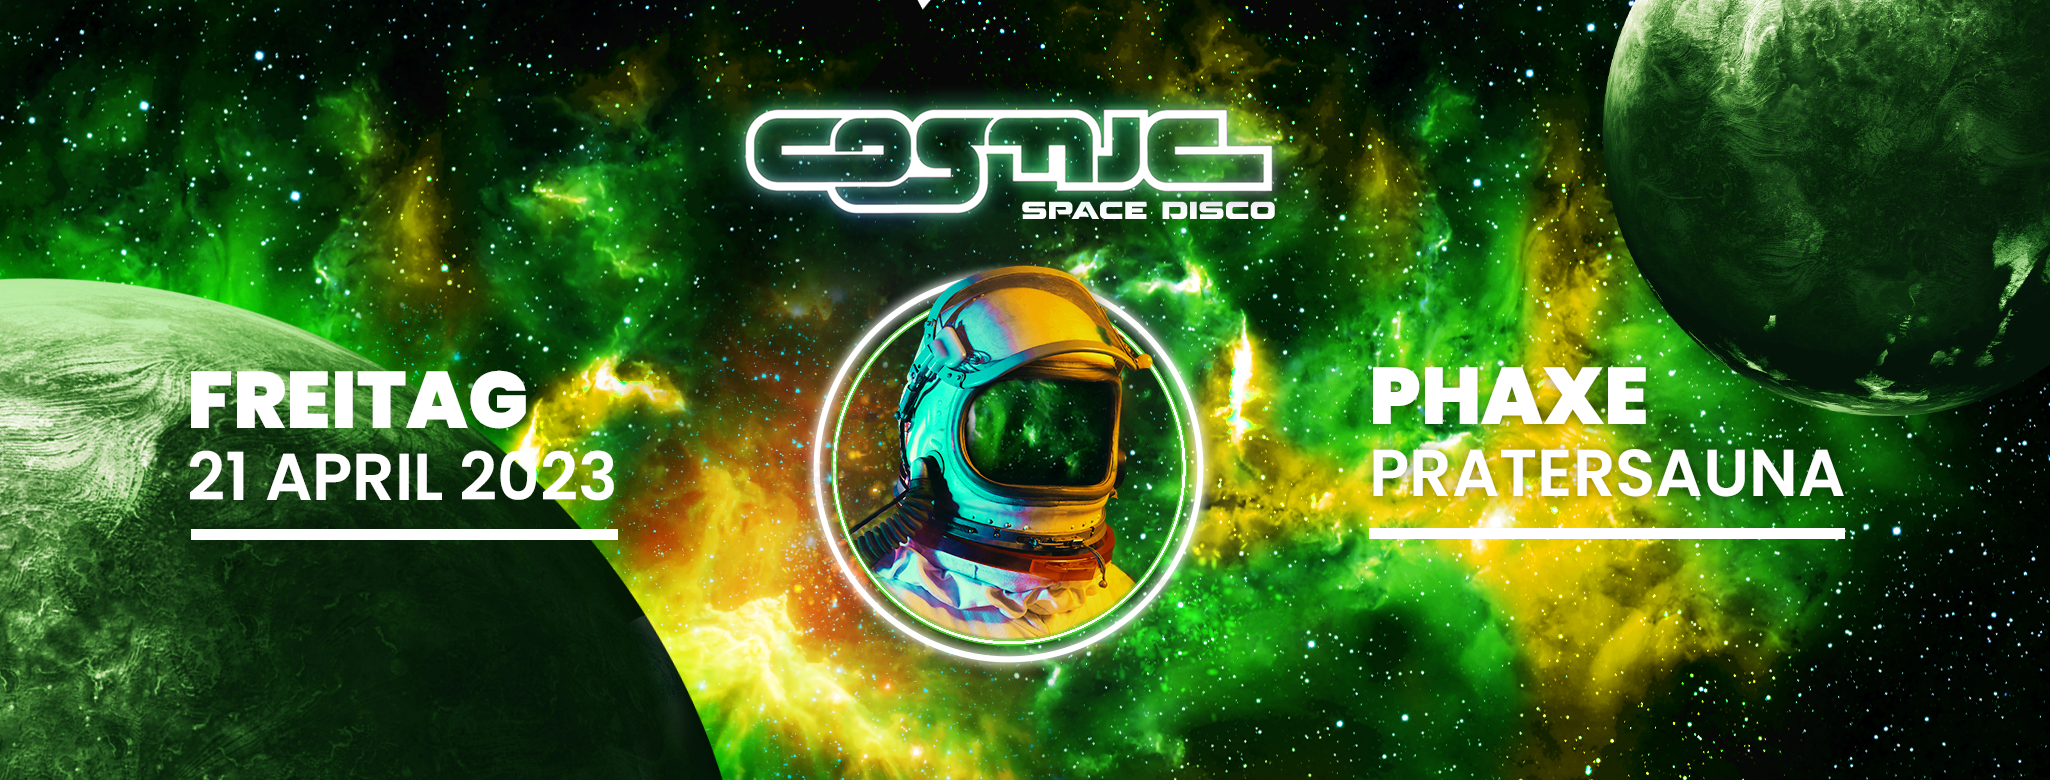 COSMIC Space Disco am 21. April 2023 @ Pratersauna.